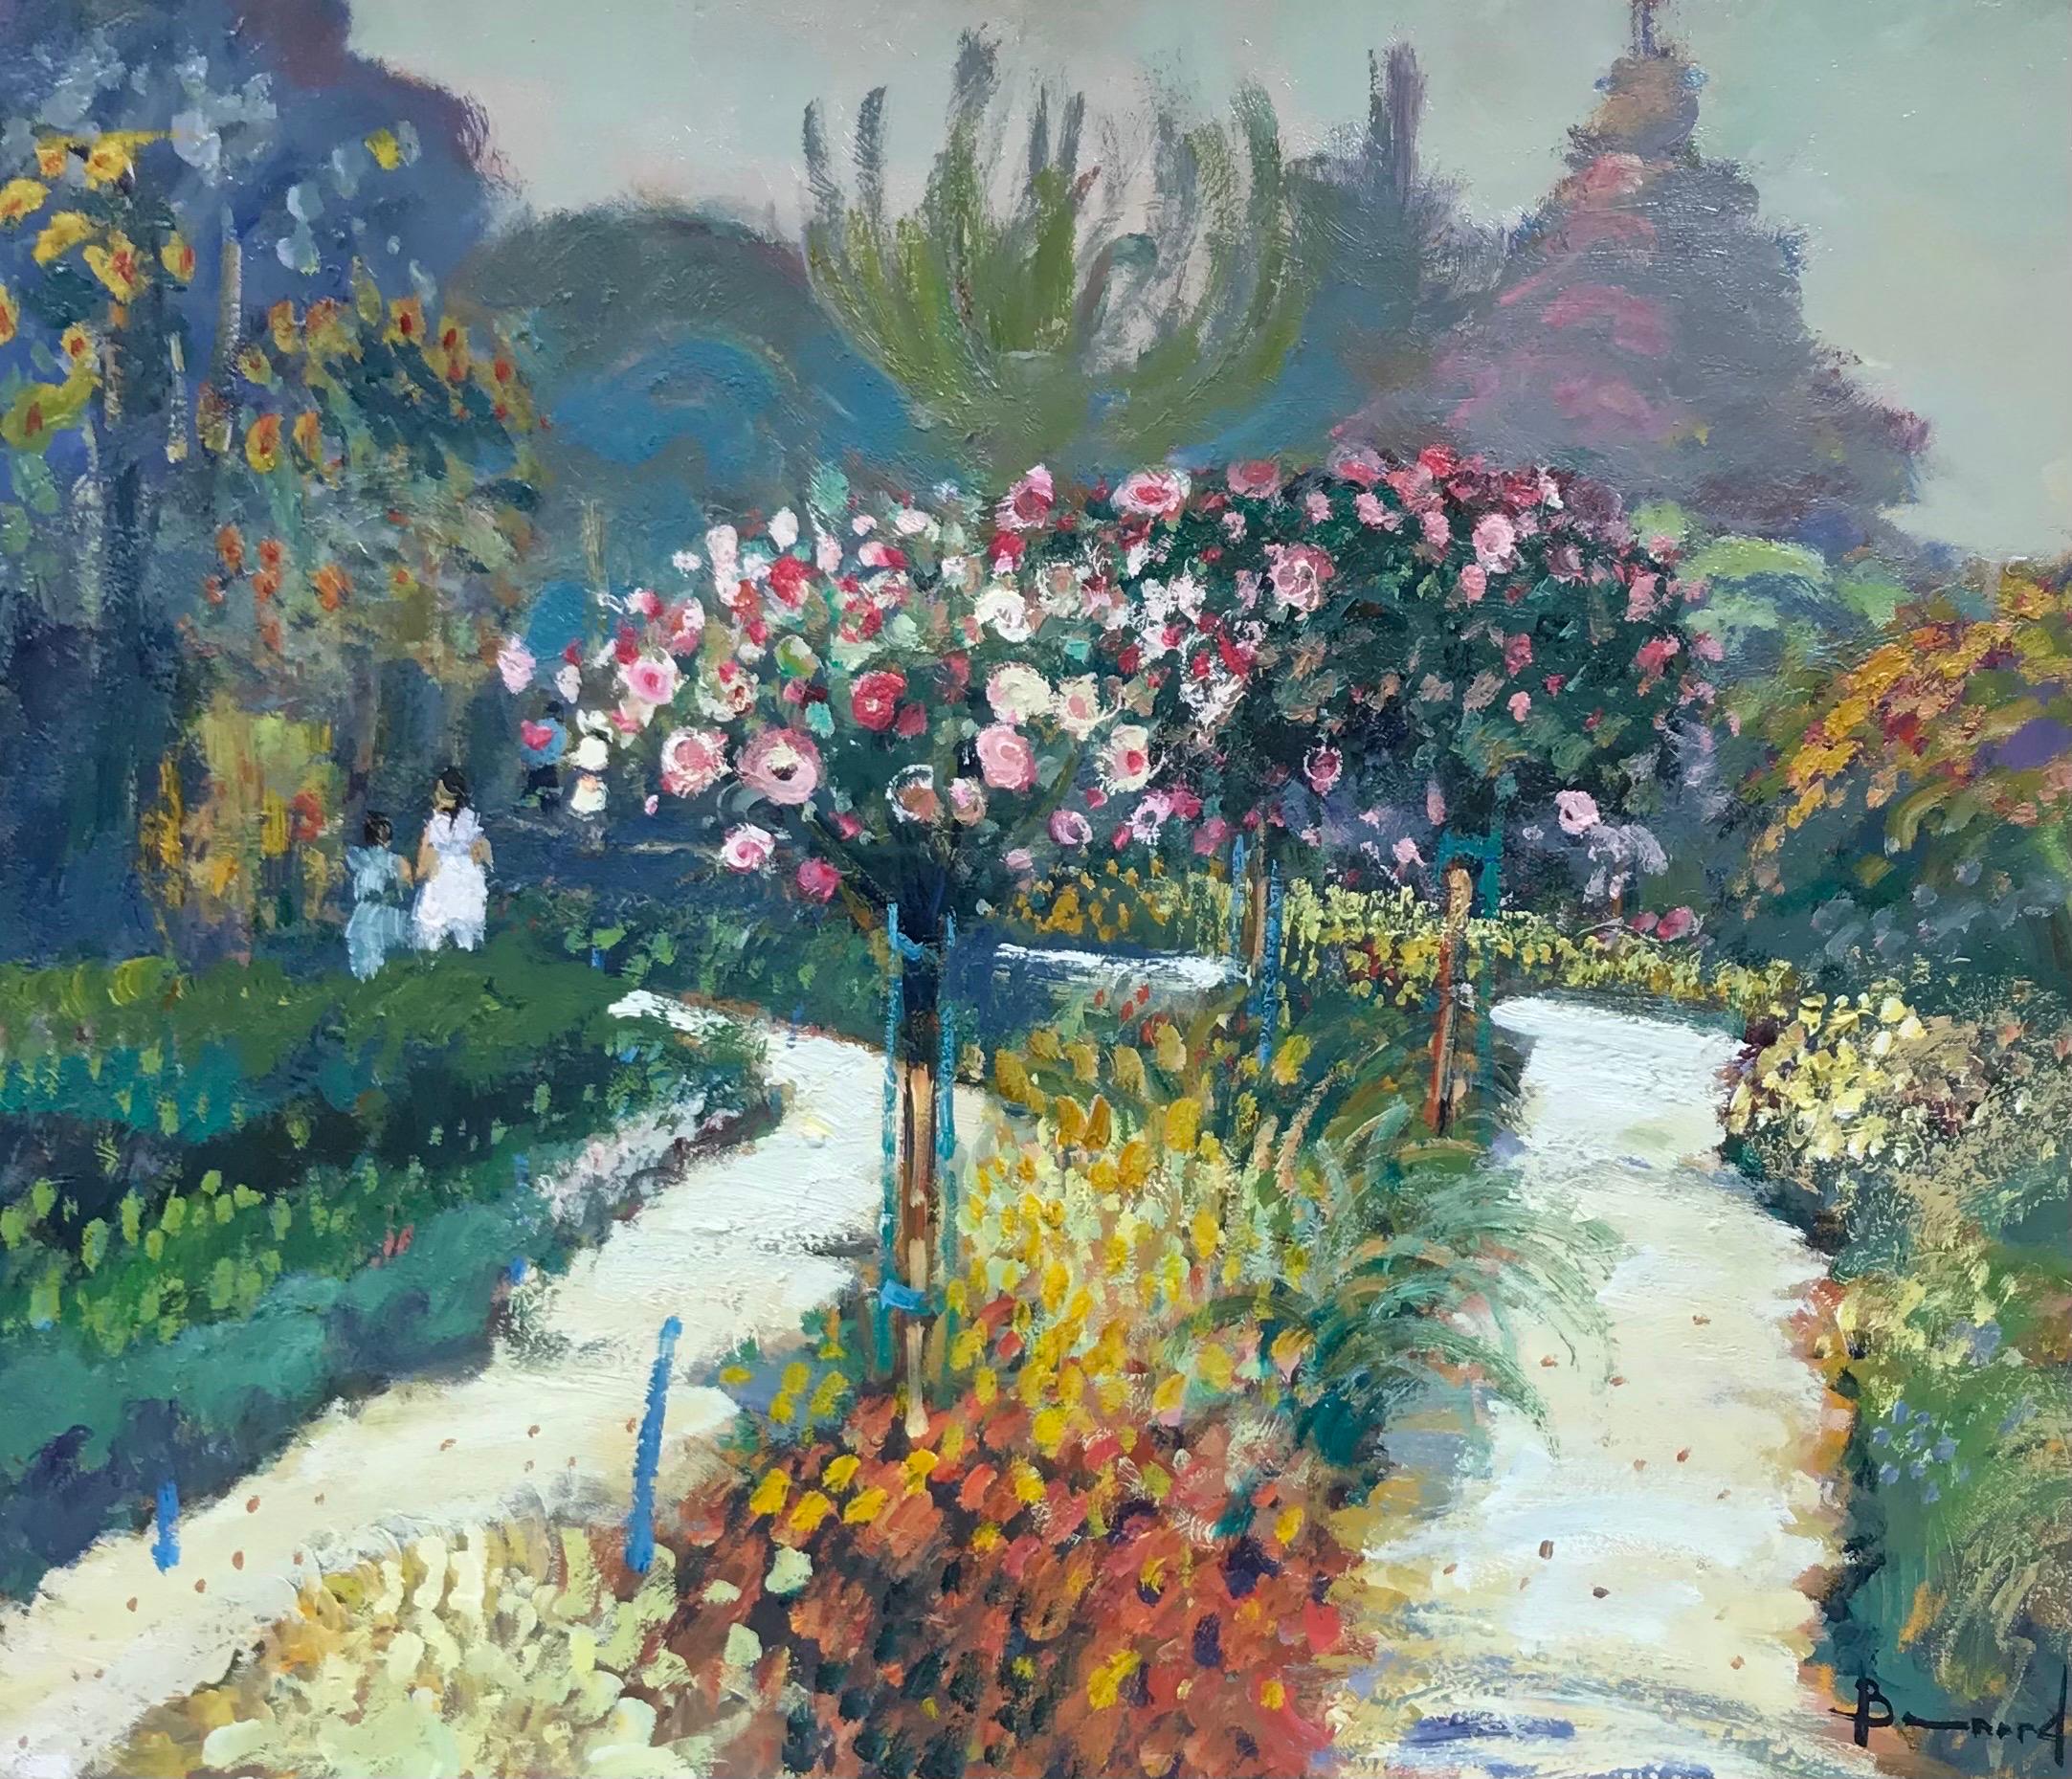 Landscape Painting Guy Benard - Fine huile impressionniste française signée, Mère et enfant dans une scène de jardin à fleurs